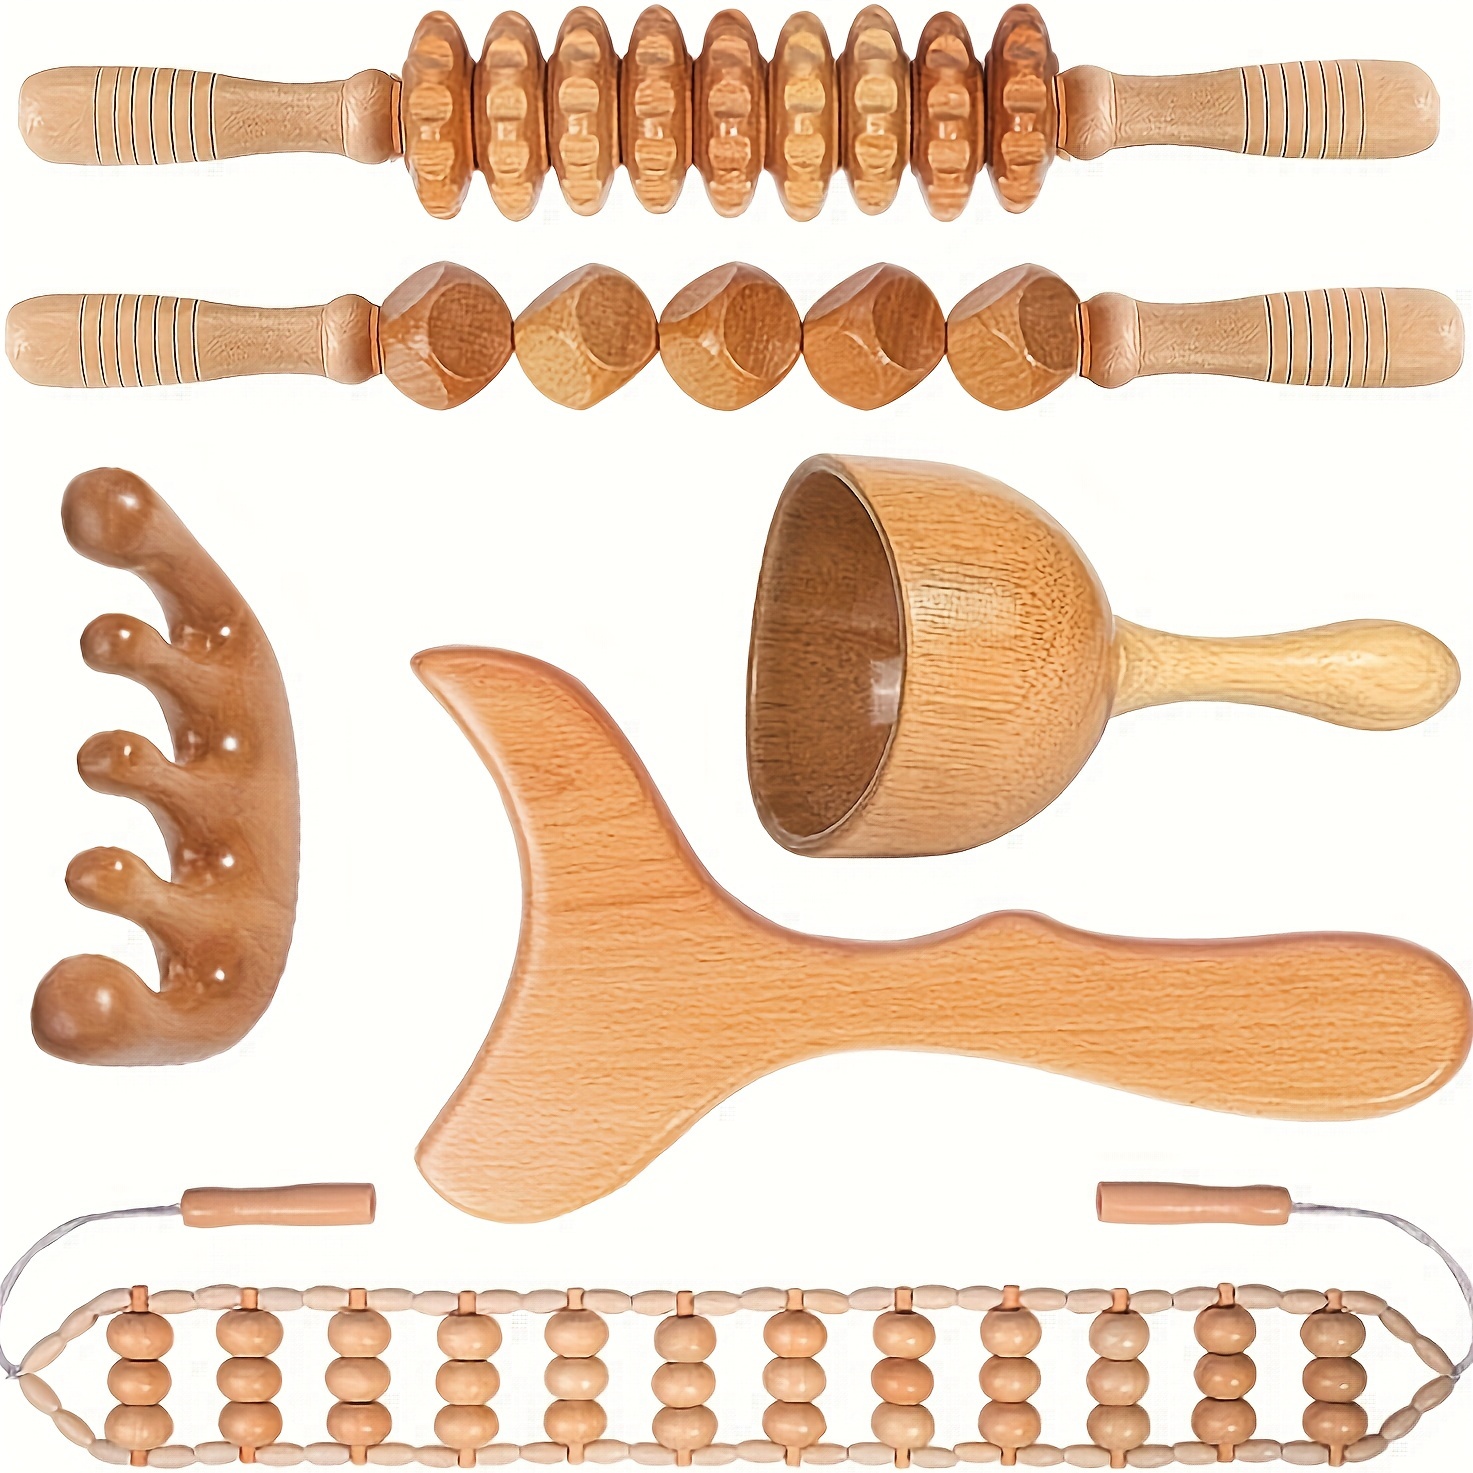 

Kit d'outils de Massage en bois, outils de sculpture du corps, rouleau de Massage en bois Rpoe pour le dos et les muscles, 1 ensemble